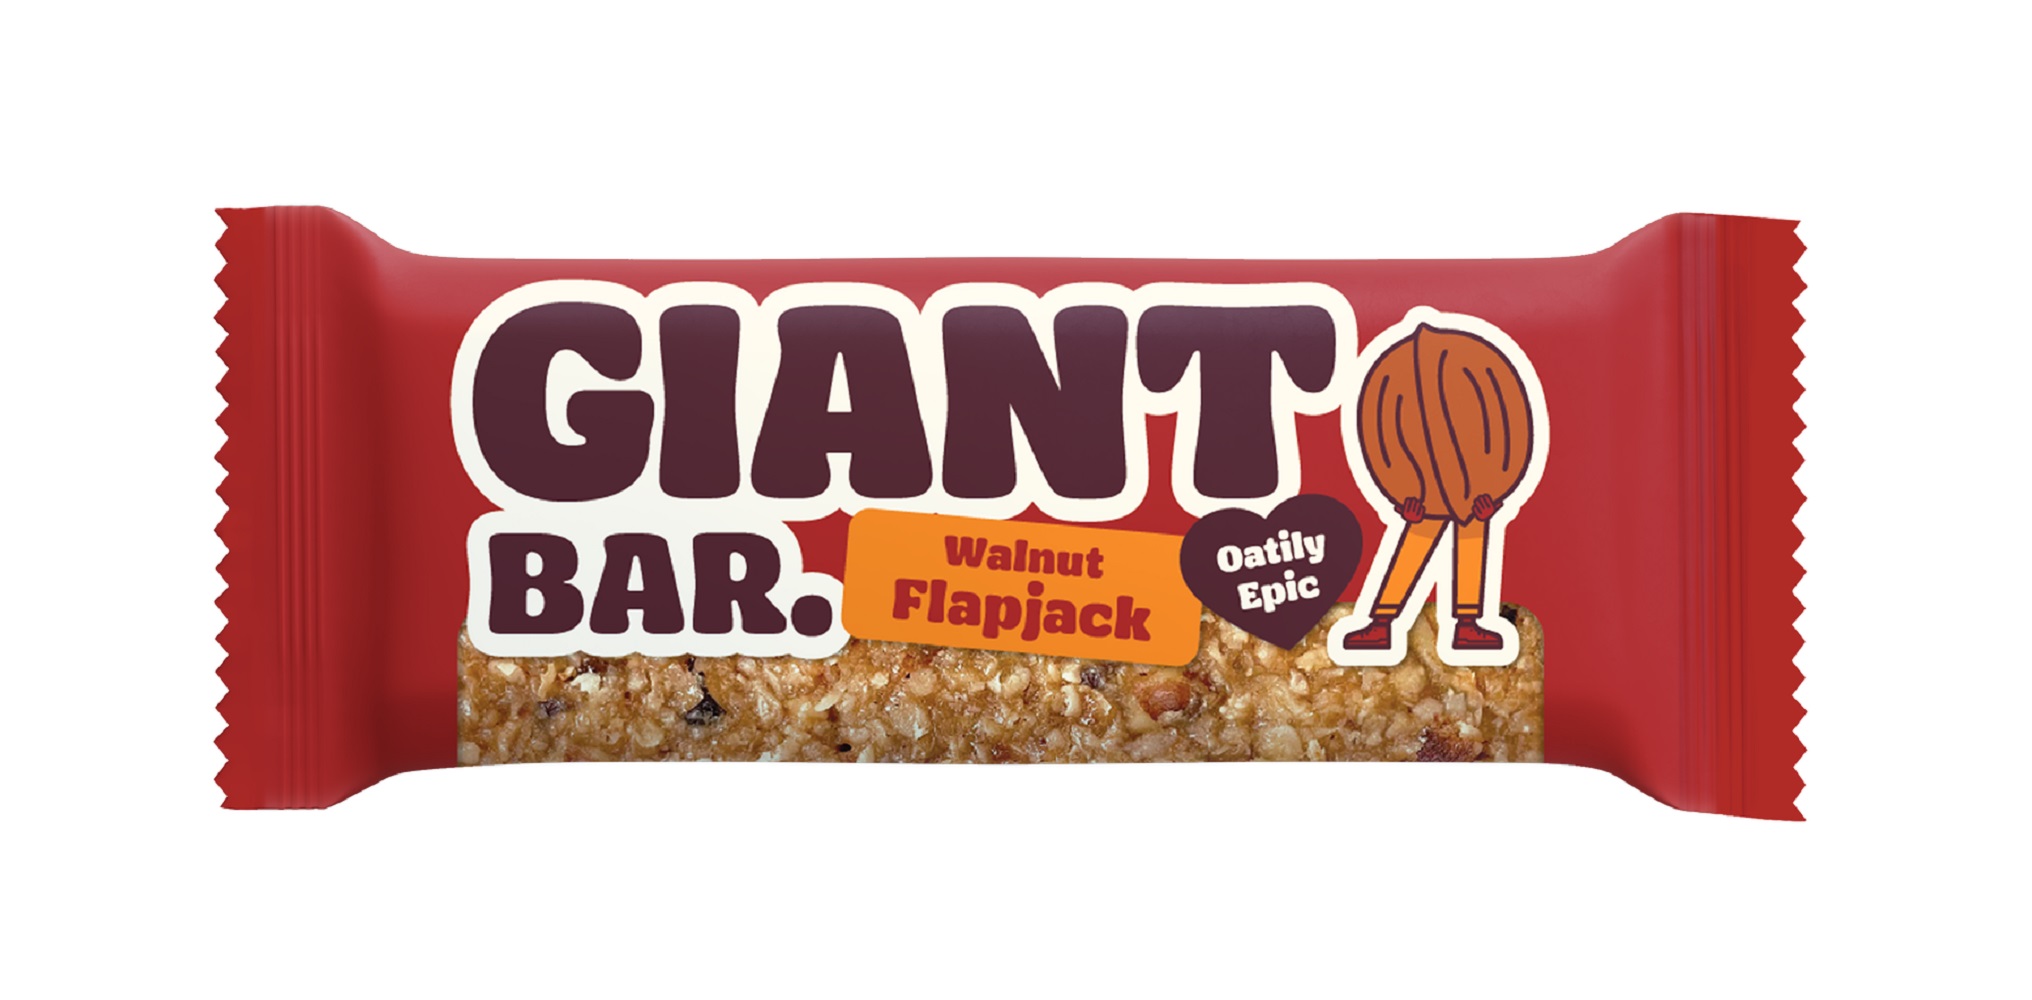 Giant Bar Walnut